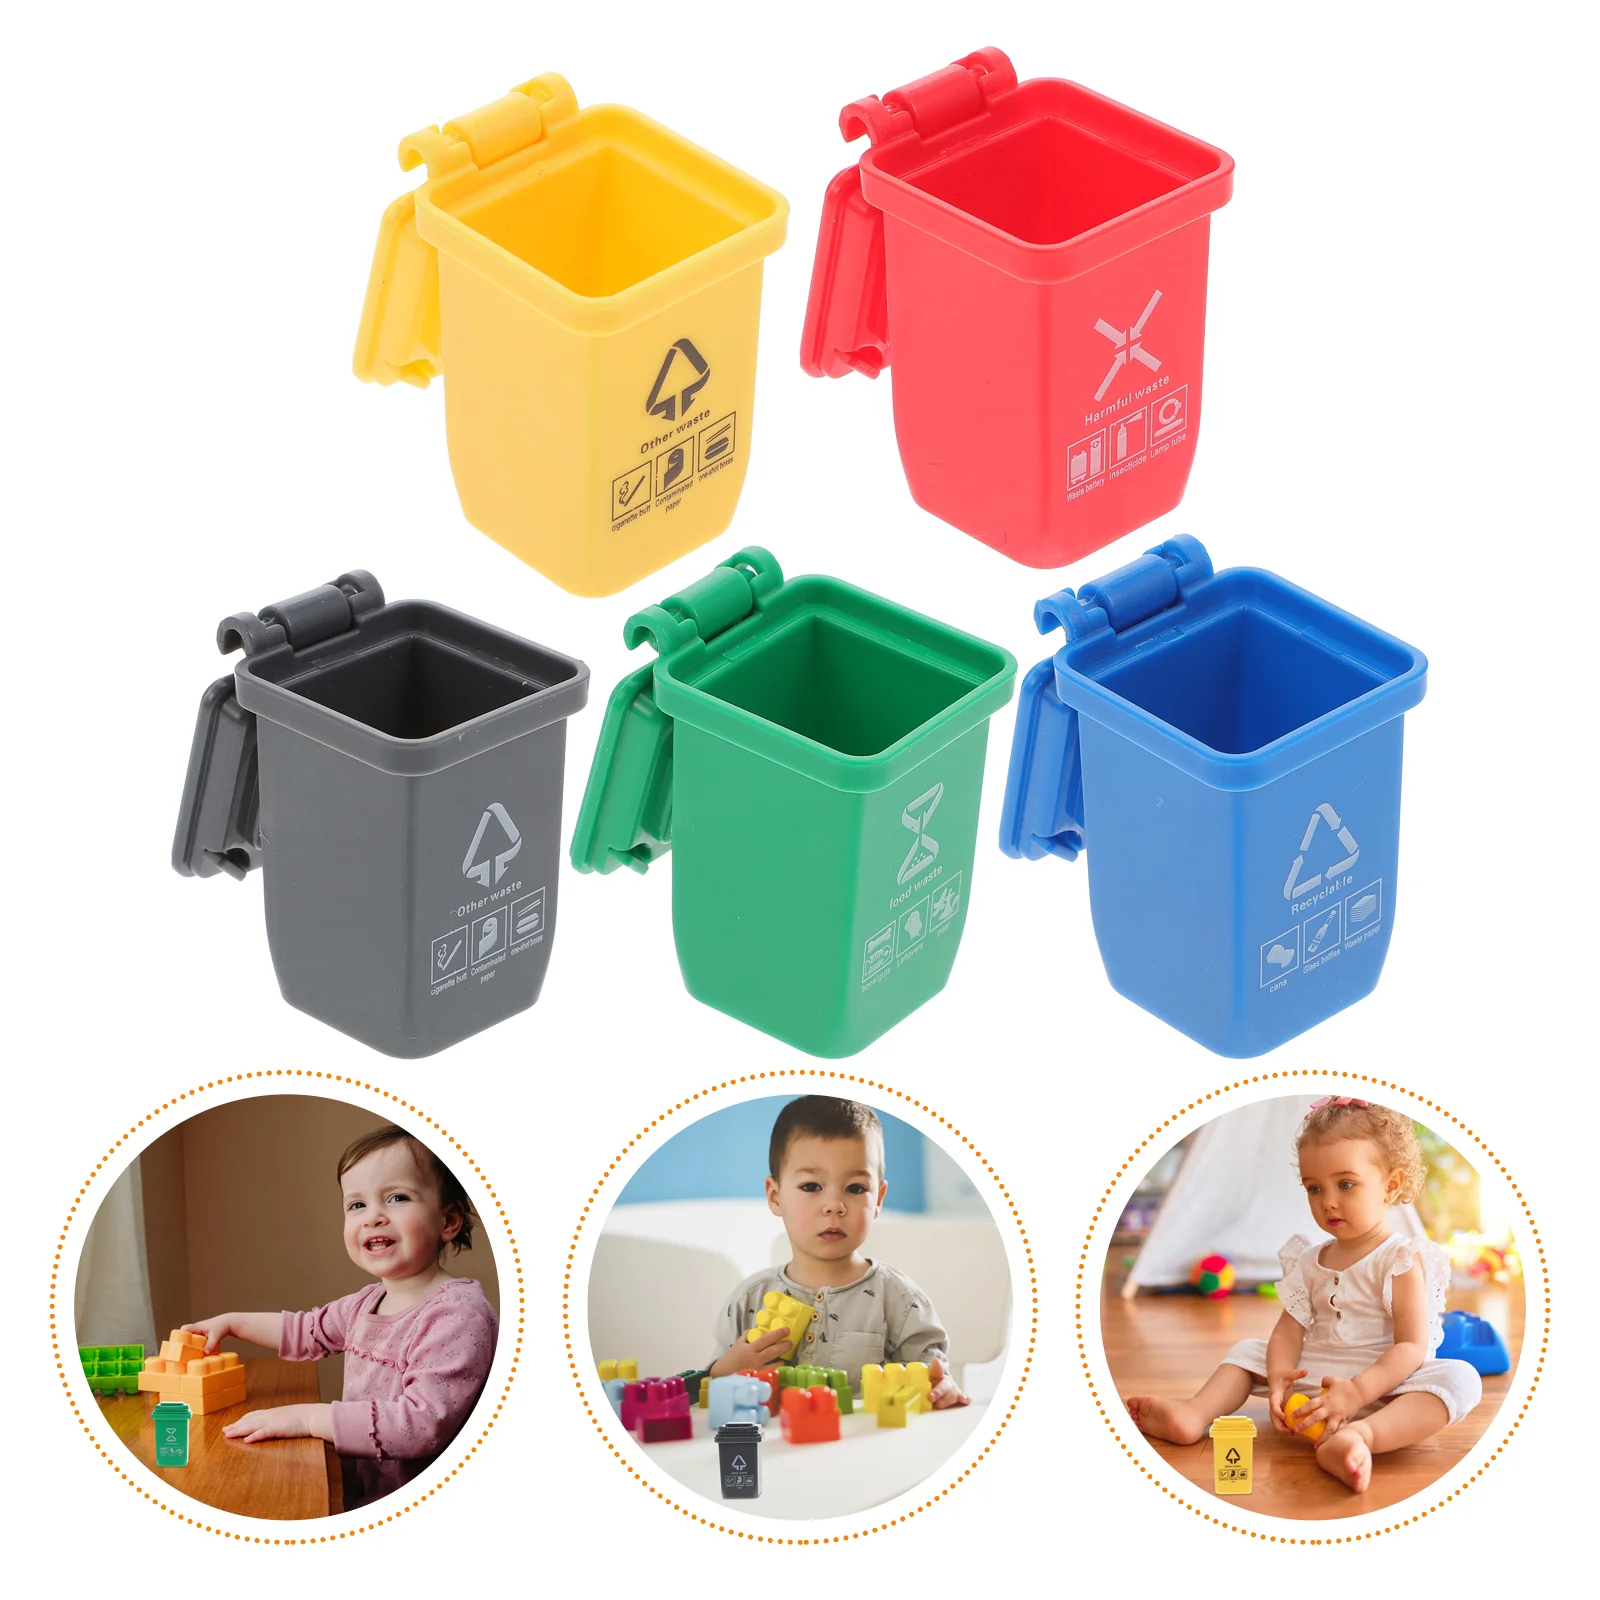 

Корзина для мусора Curbside: 5 шт. корзина для мусора для дома, мусорная корзина для транспортных средств, корзина для мусора, классификация мусора, игрушки для детей, малышей